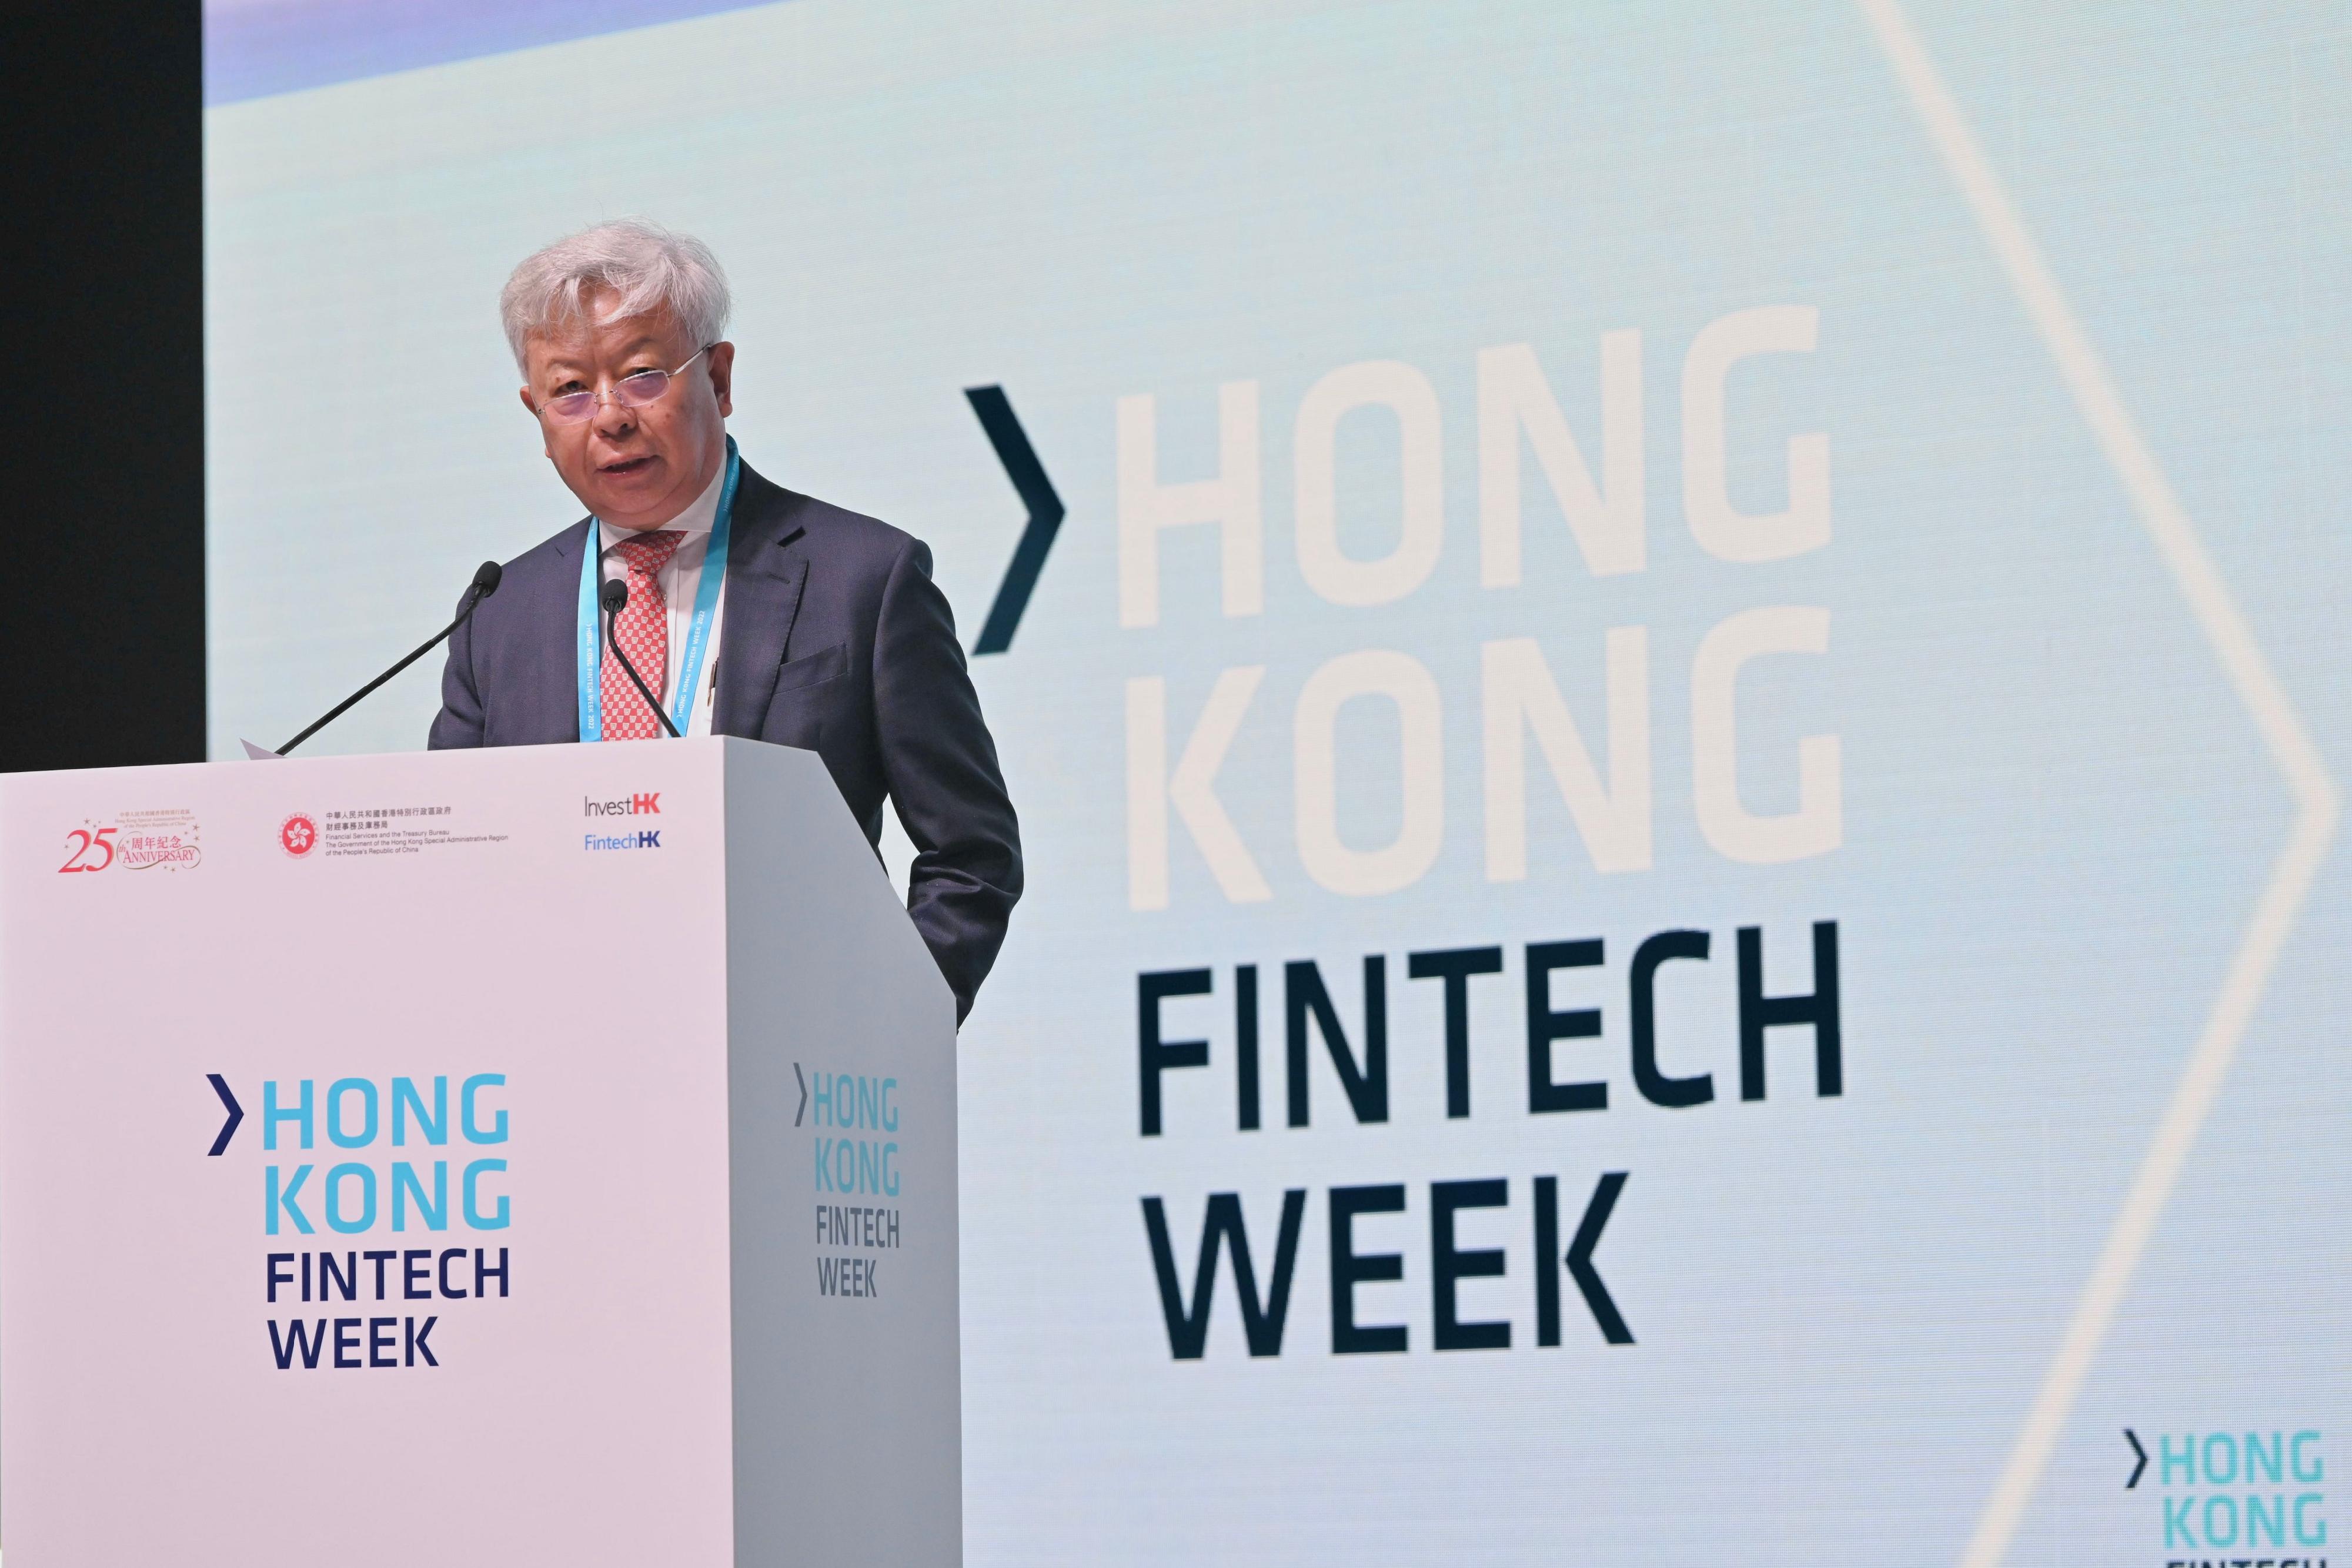 為期五日的香港金融科技周2022吸引來自逾95個經濟體、逾三萬多名參與人次及超過五百萬在線觀看次數。圖示亞洲基礎設施投資銀行行長兼董事會主席金立群於十一月一日發表的主題演講。